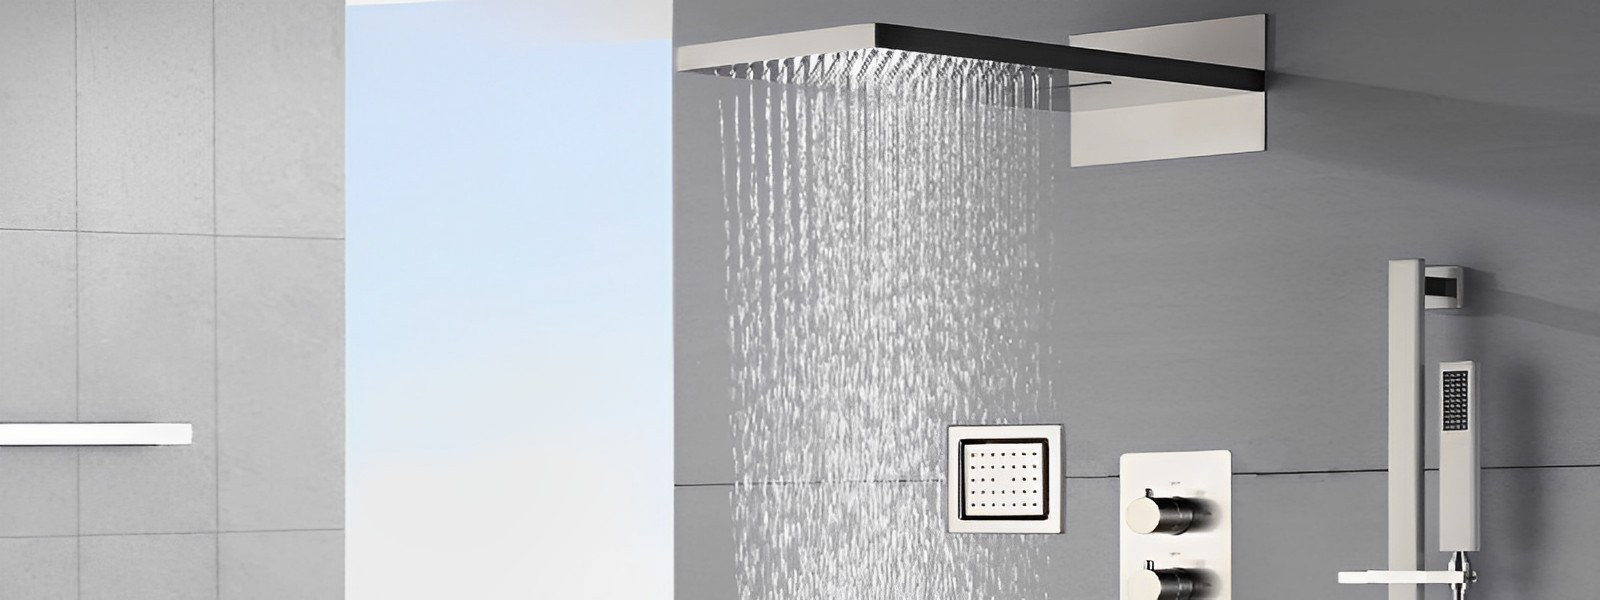 Bathtub Drain Strainer, 5cm Stainless Steel Shower Hair Filter - Kitchen  Sink Stopper, Drain Filter Mesh - For Bathroom, Balcony